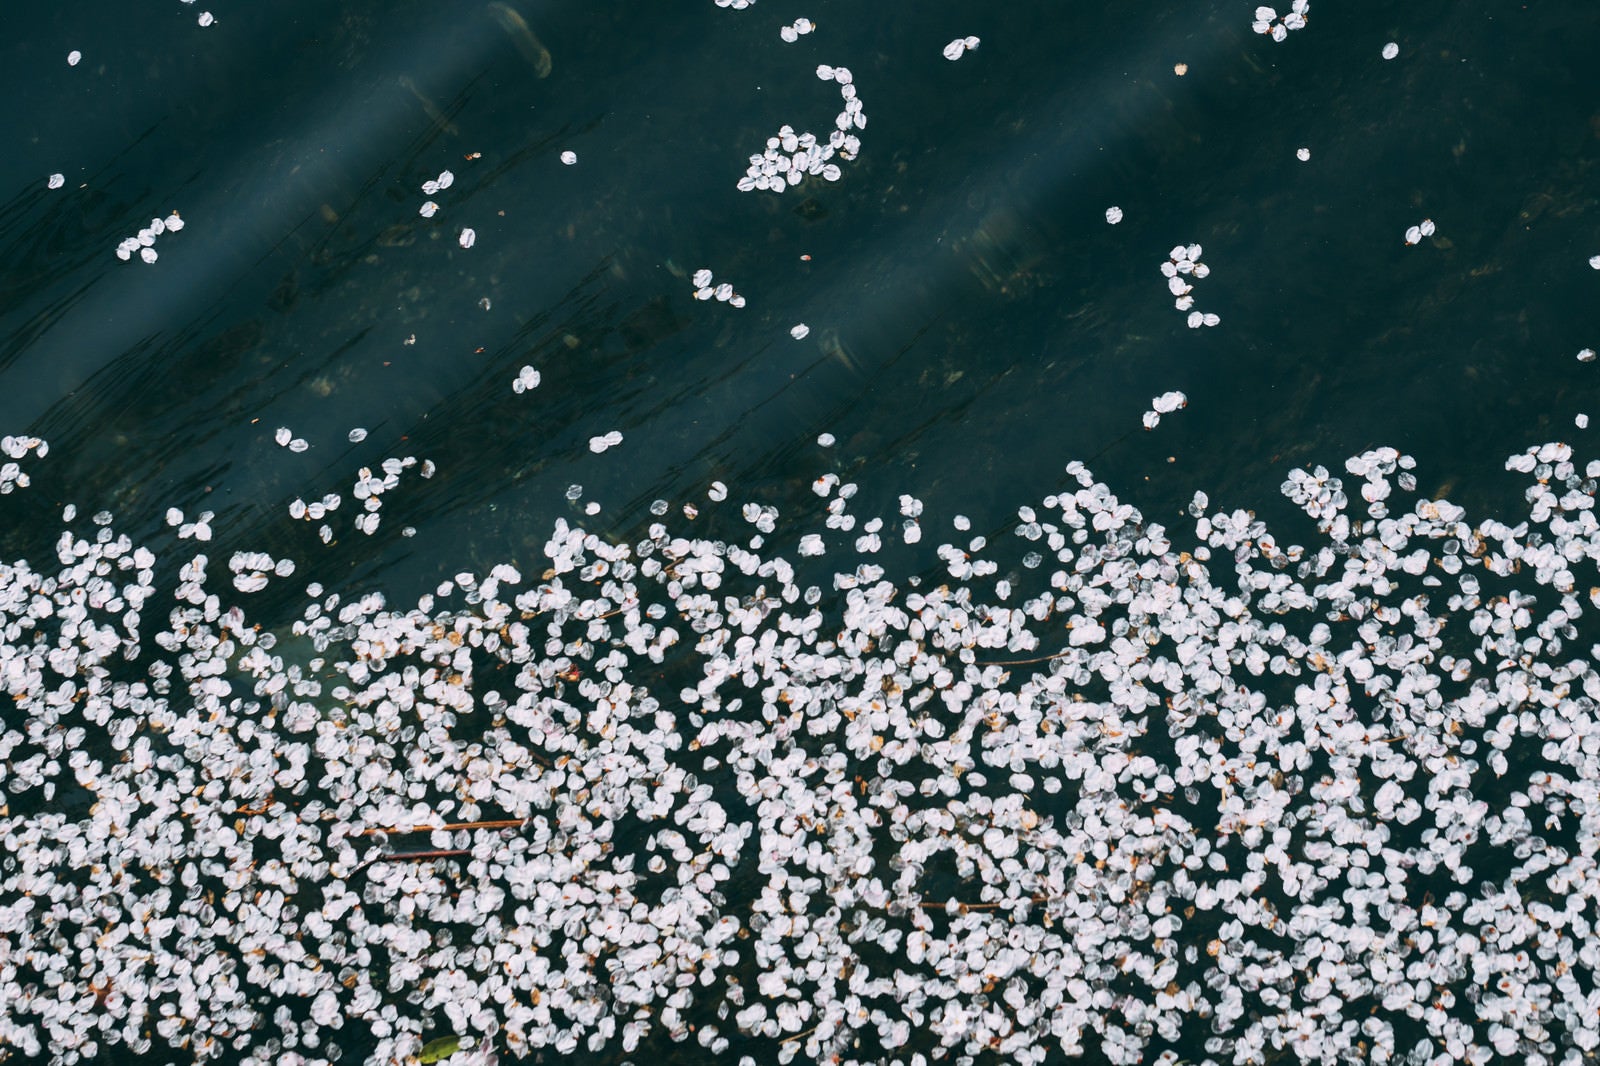 「水面に浮かぶ桜の花びら」の写真